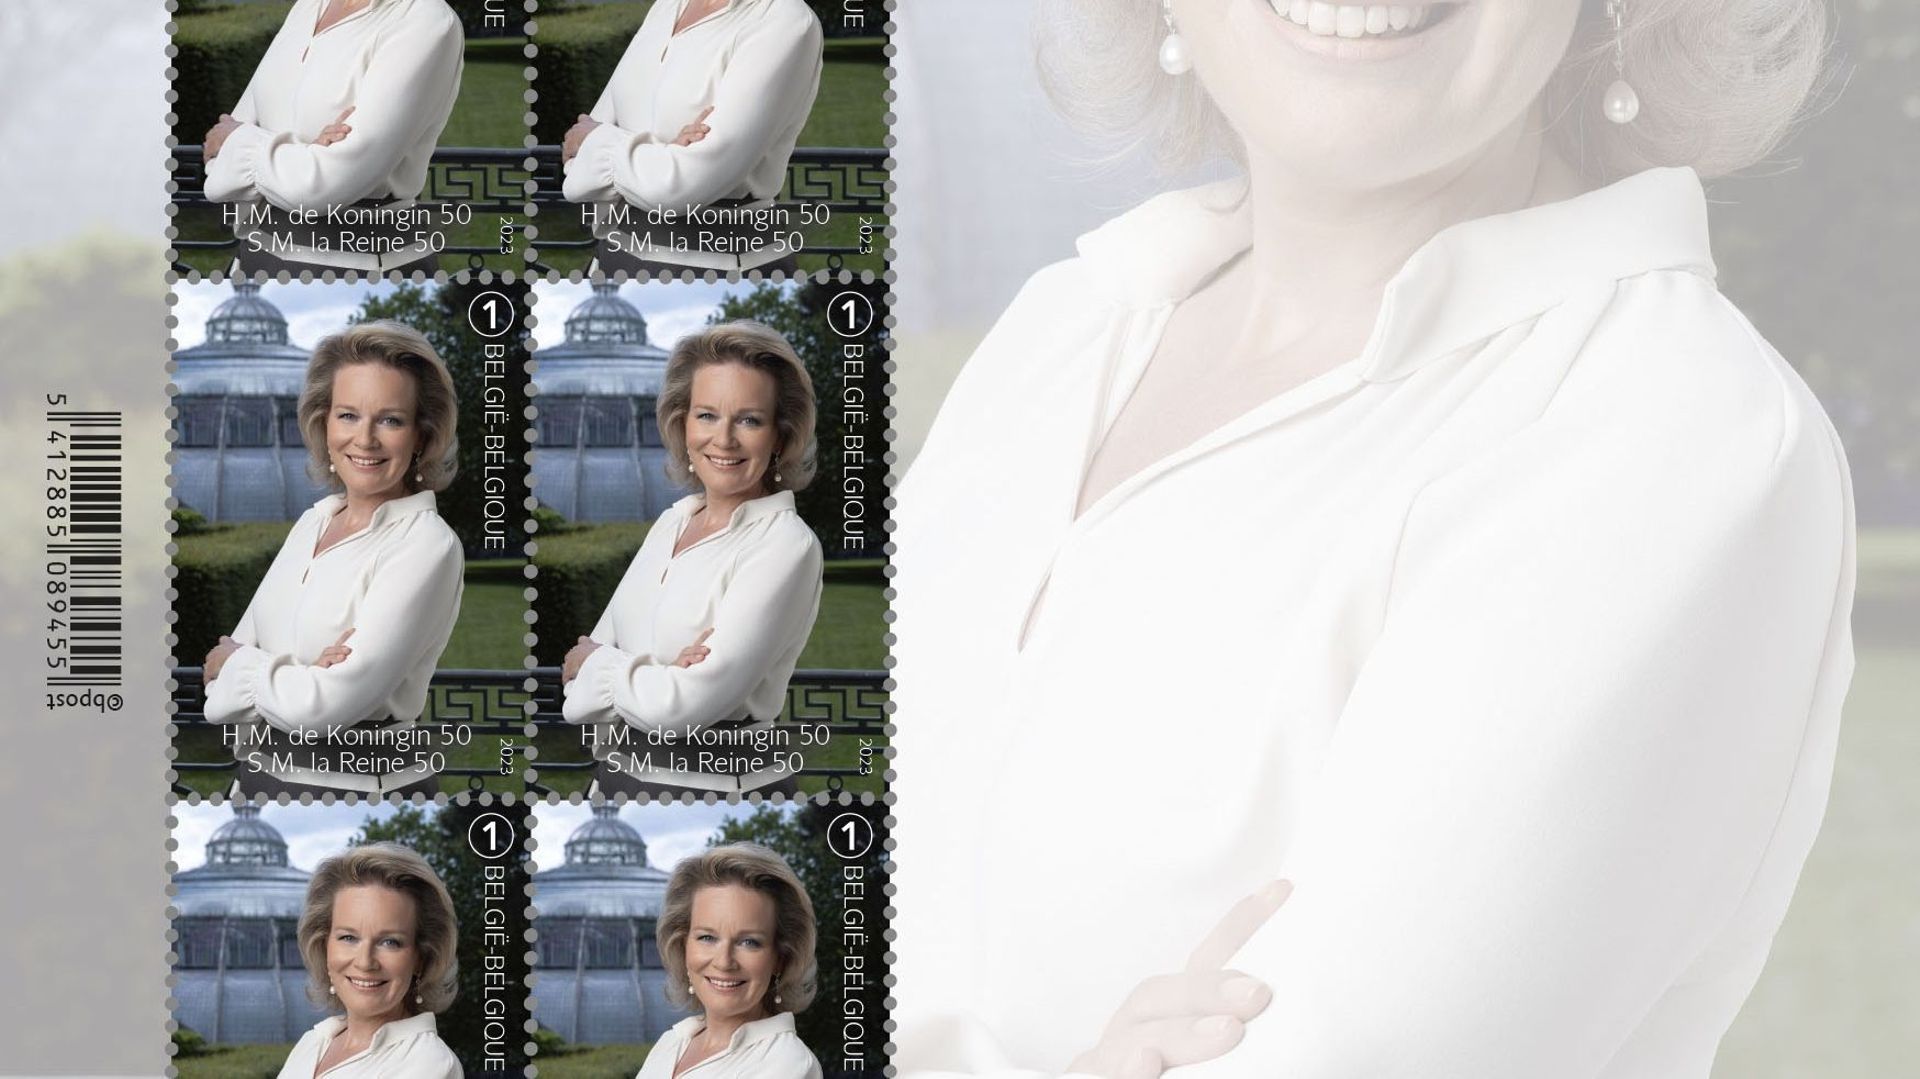 Le feuillet de timbres-poste sera disponible dès le 23 janvier dans les plus grands bureaux de poste du pays.